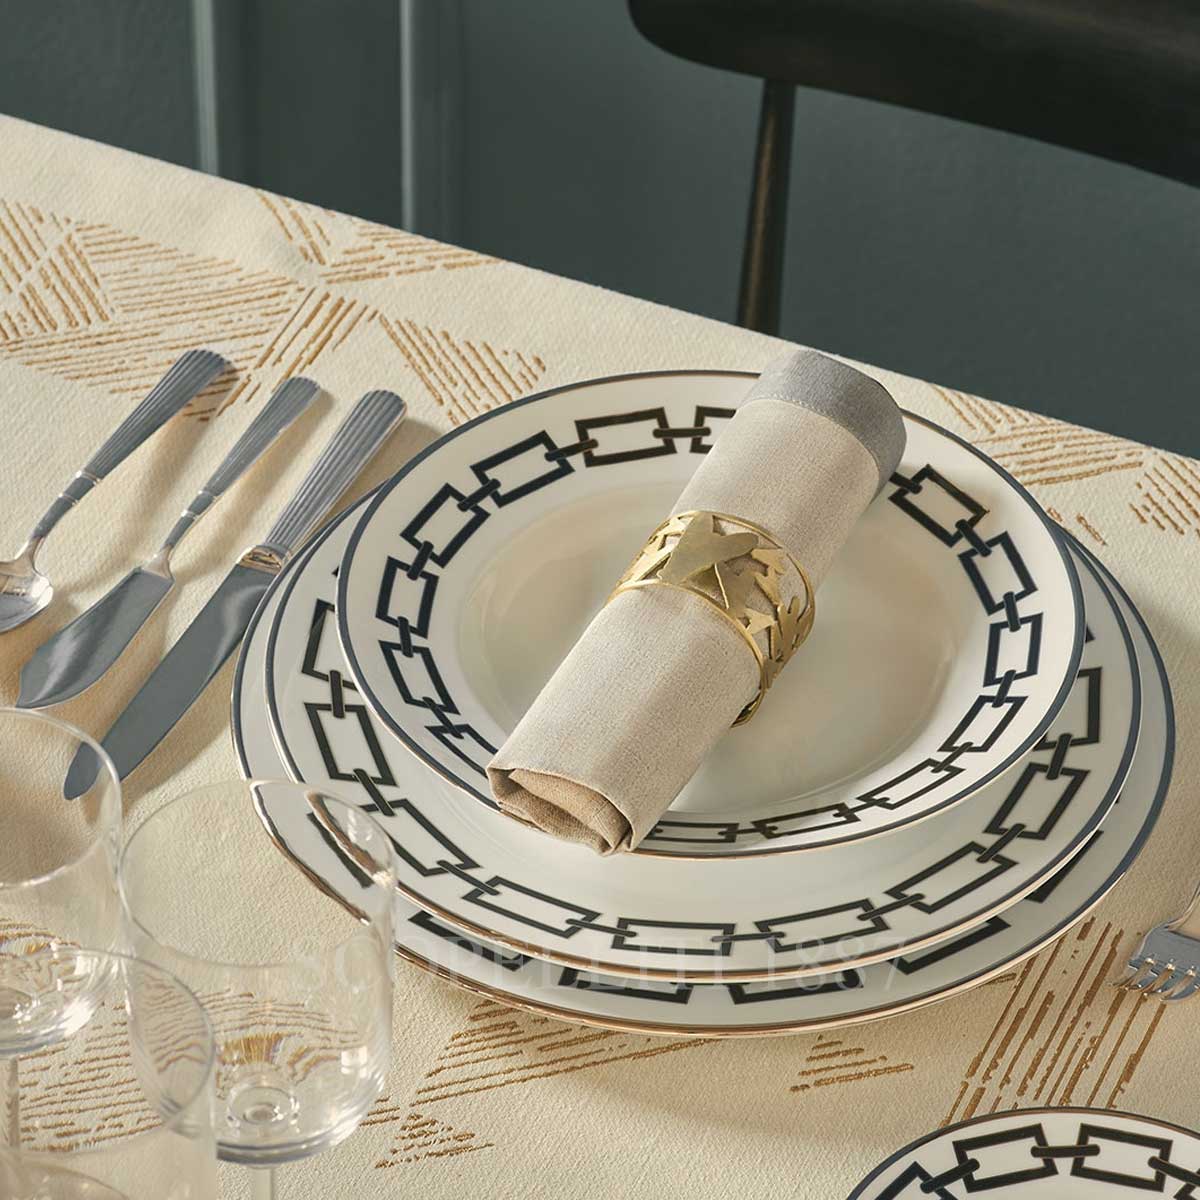 richard ginori luxury dinnerware catene